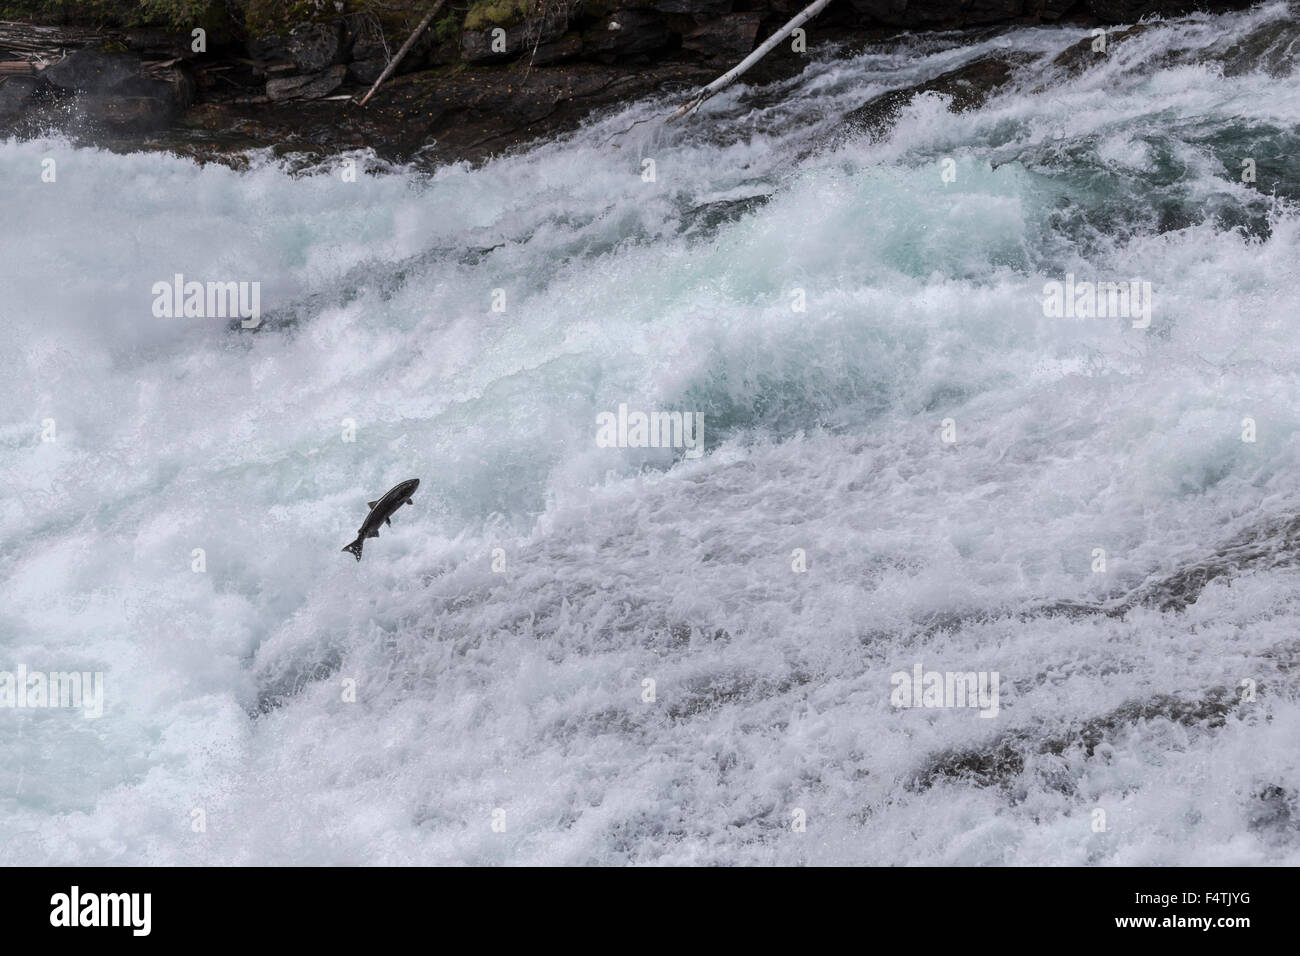 Chinook Lachs versuchen zu springen, Baileys Rutsche, einen sehr schnellen Wasserfall im Wells Gray Provincial Park in British Columbia, Kanada. Stockfoto